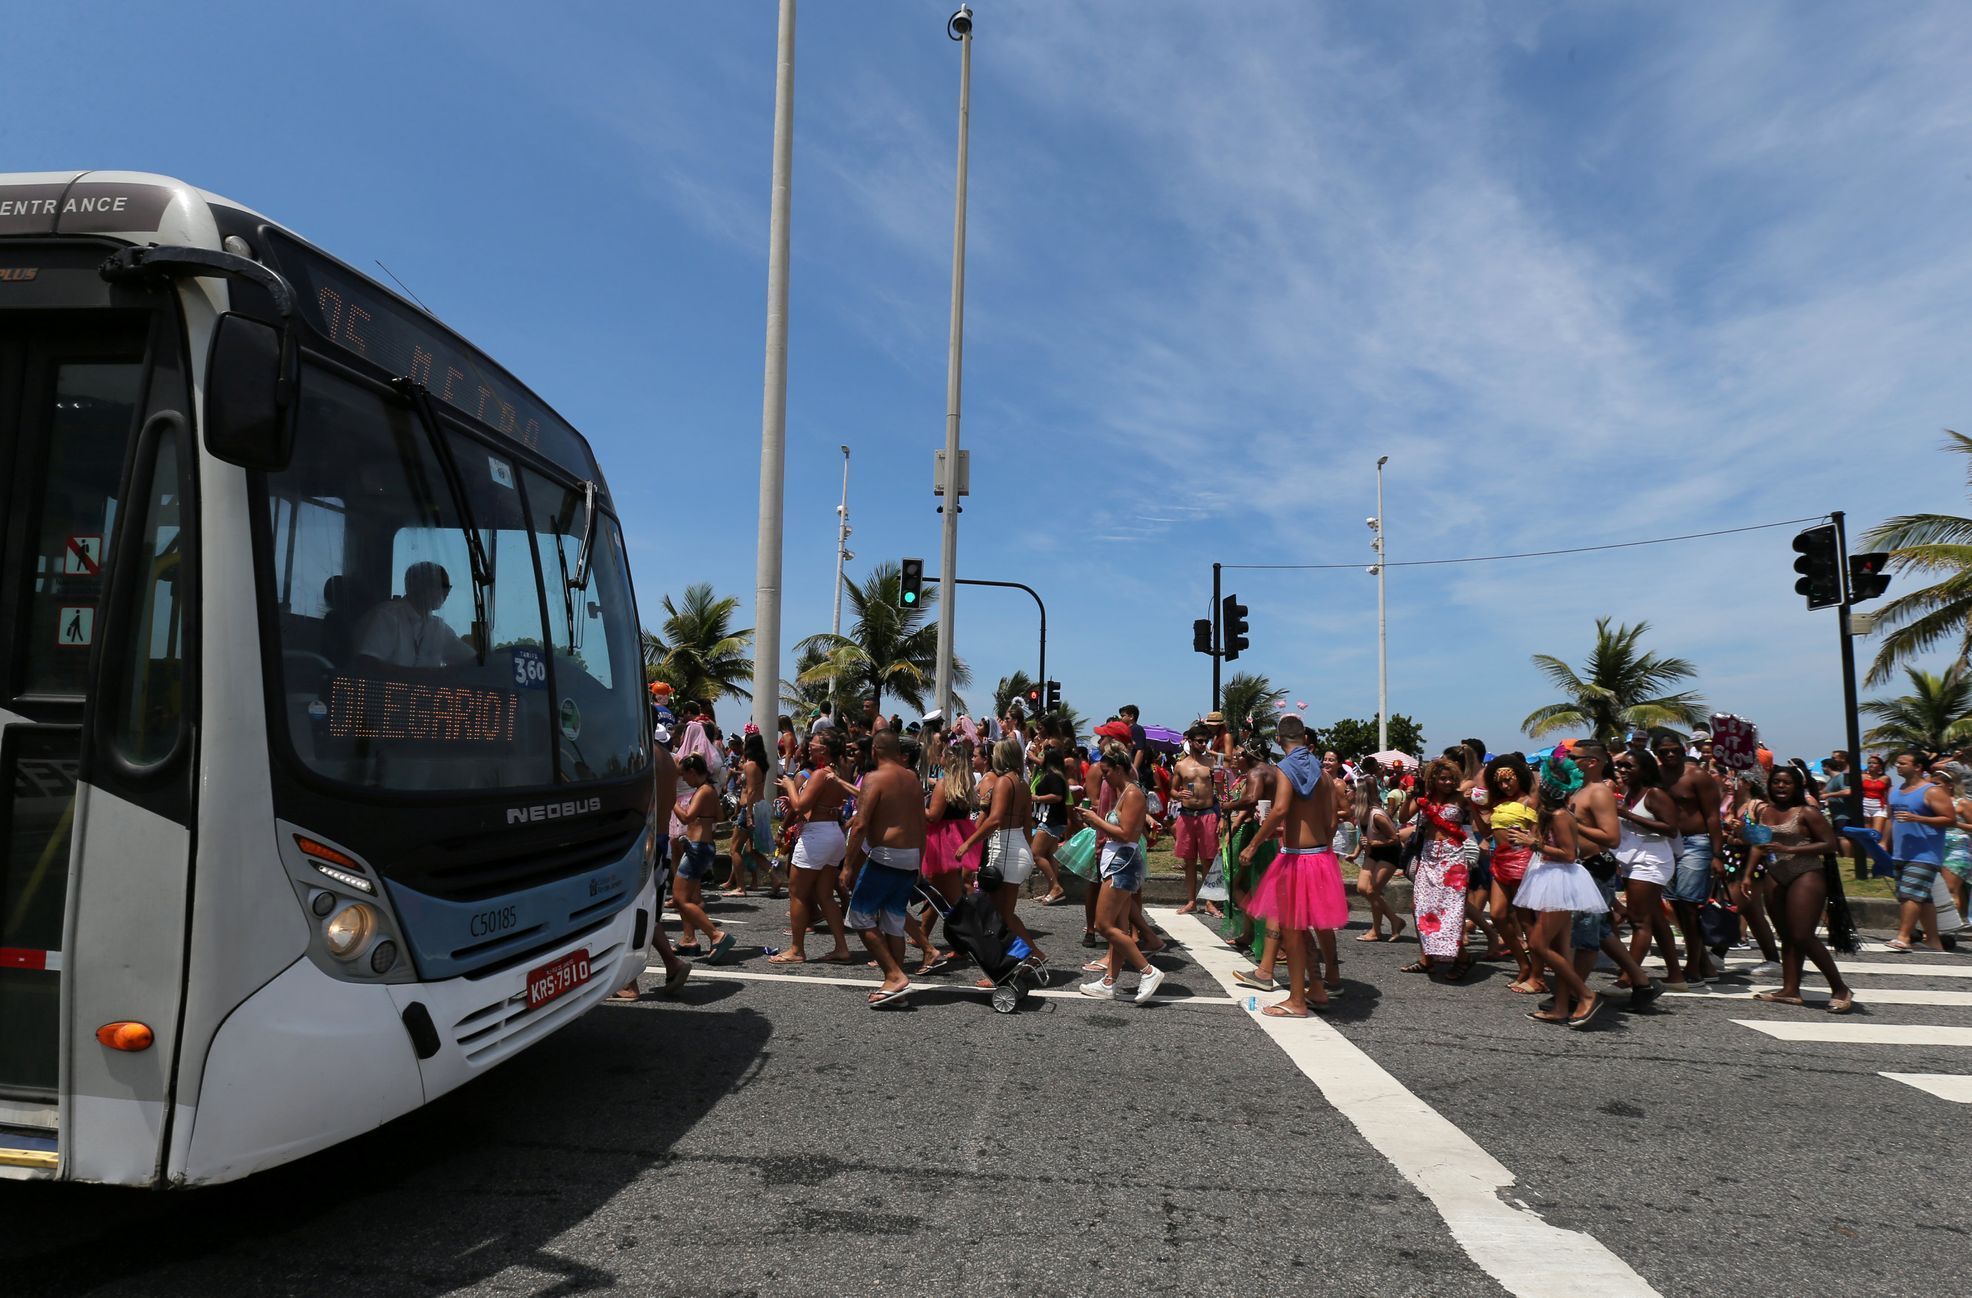 Karneval v Riu de Janeiro